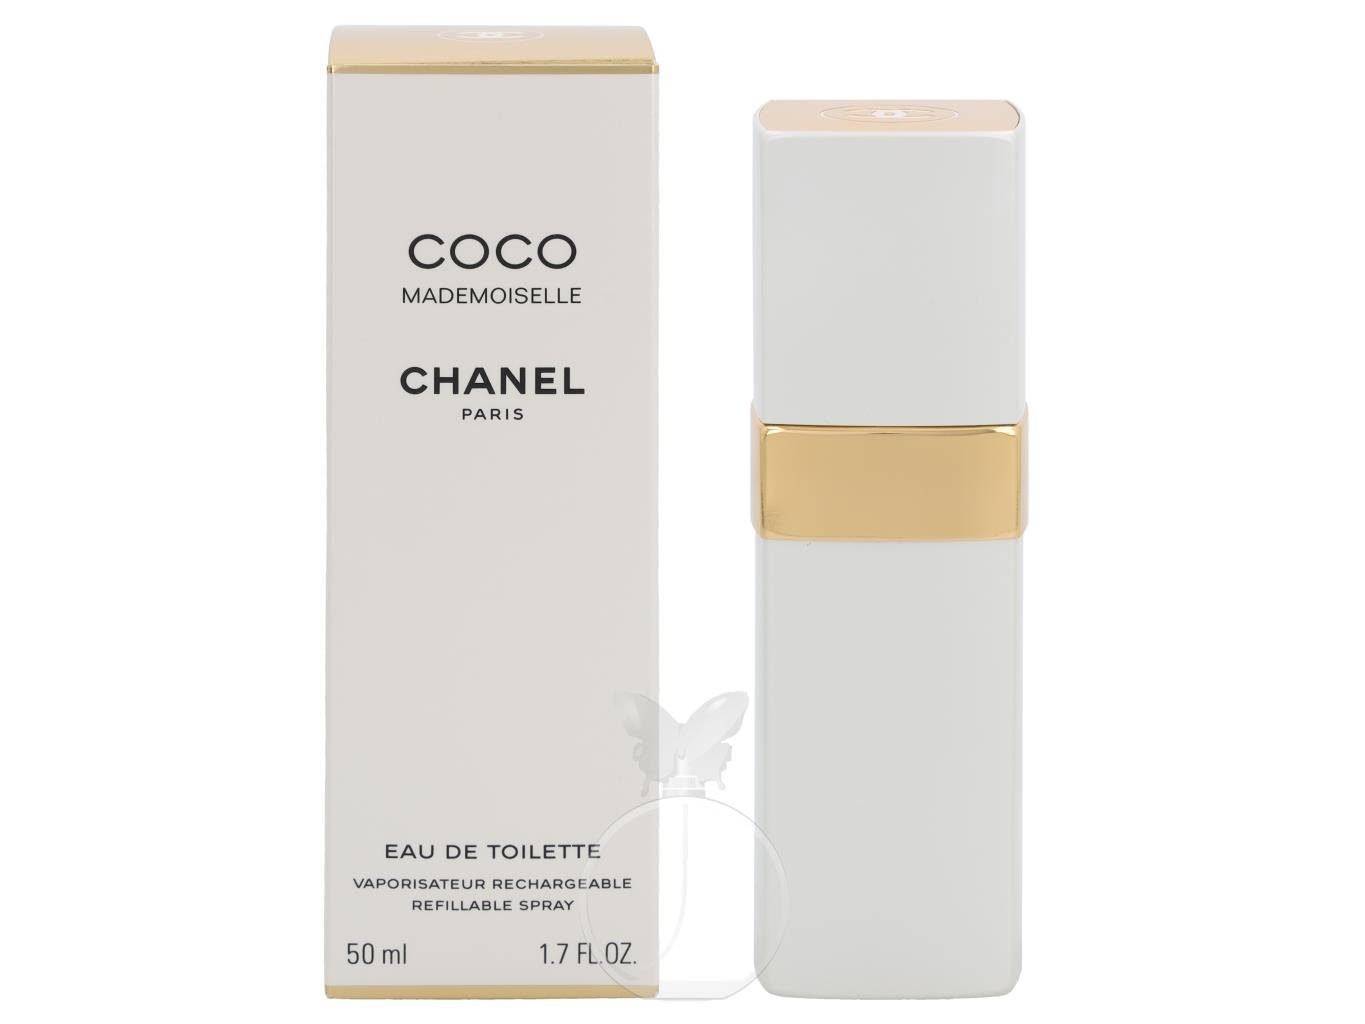 CHANEL Eau de Coco Toilette Chanel Nachfüllbar 50 Toilette ml Mademoiselle Eau de